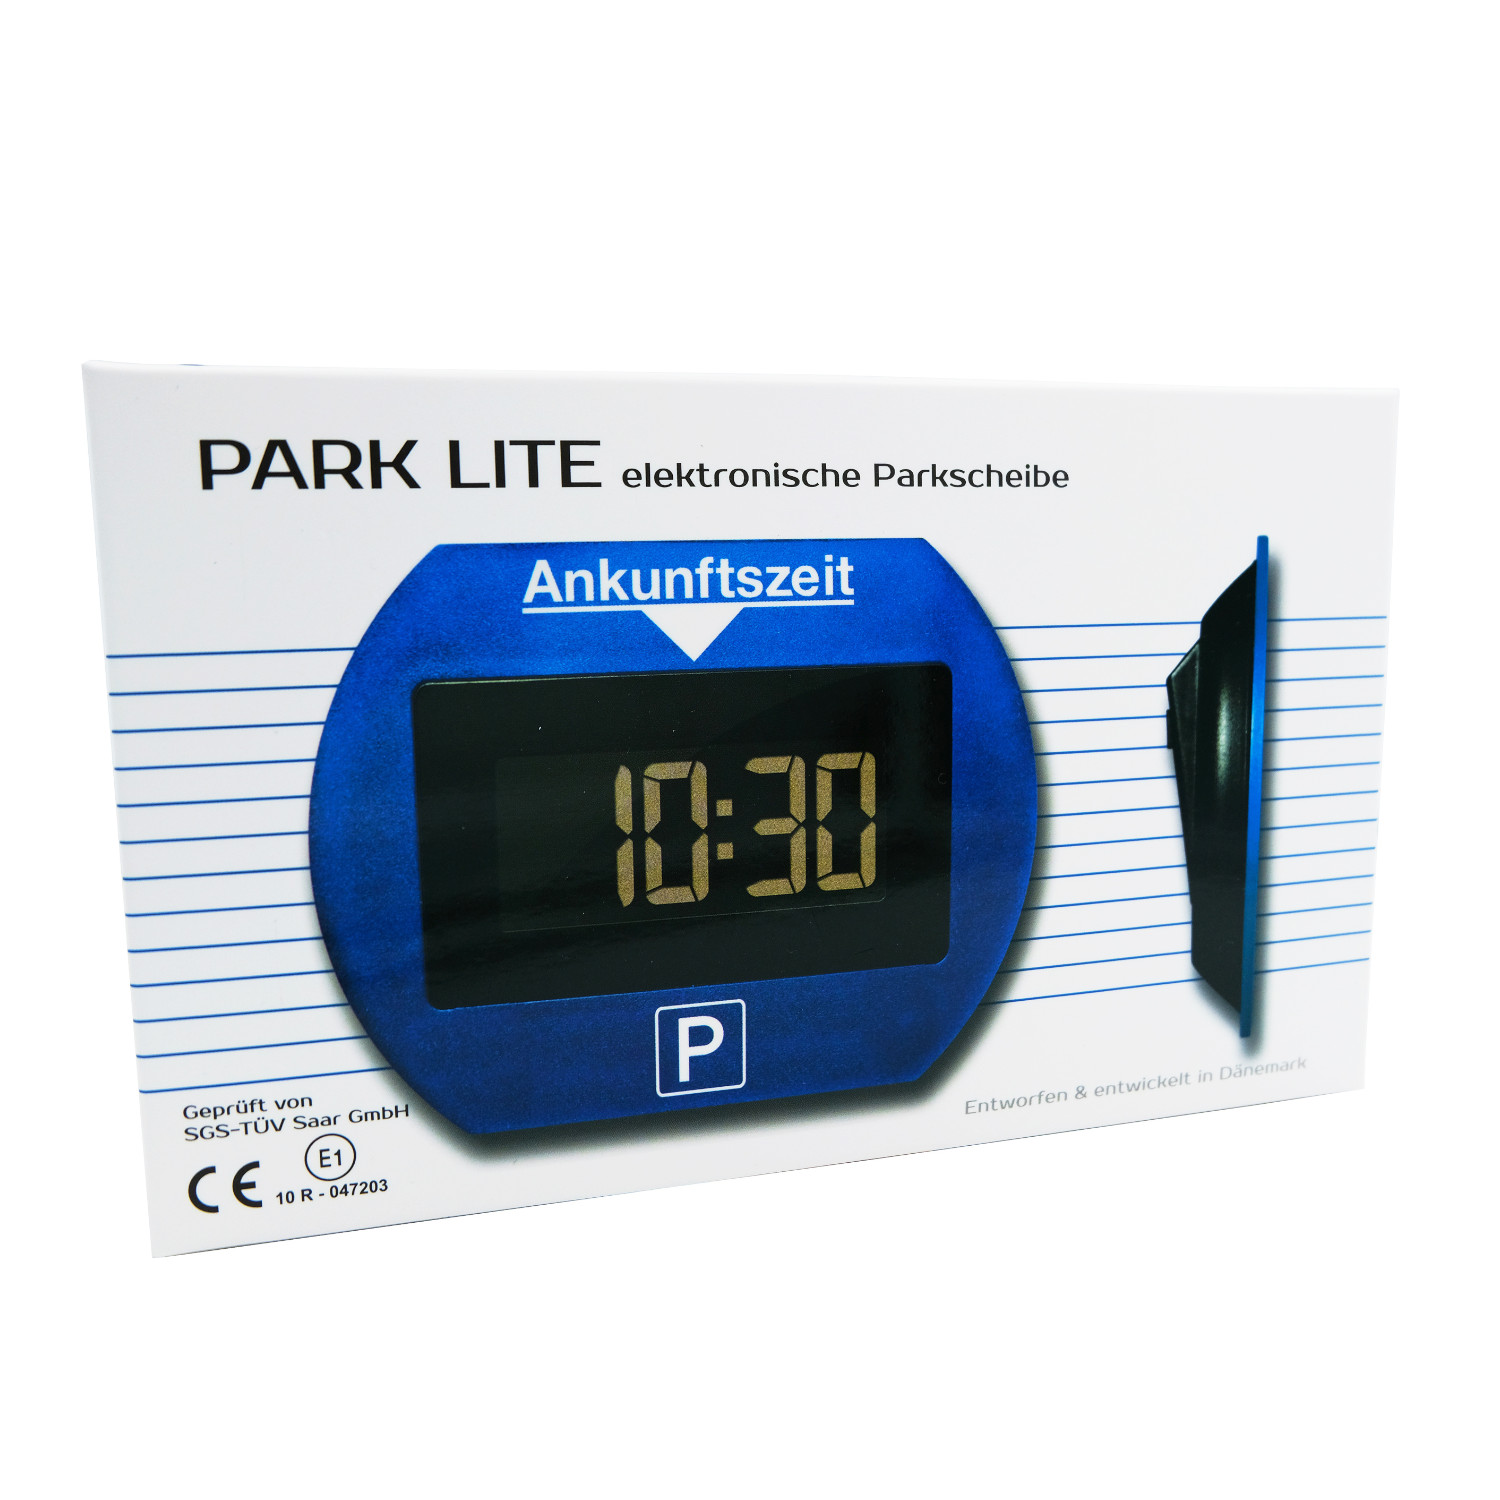 PARK LITE - automatische Parkscheibe, Gadgets, Tech & Fun